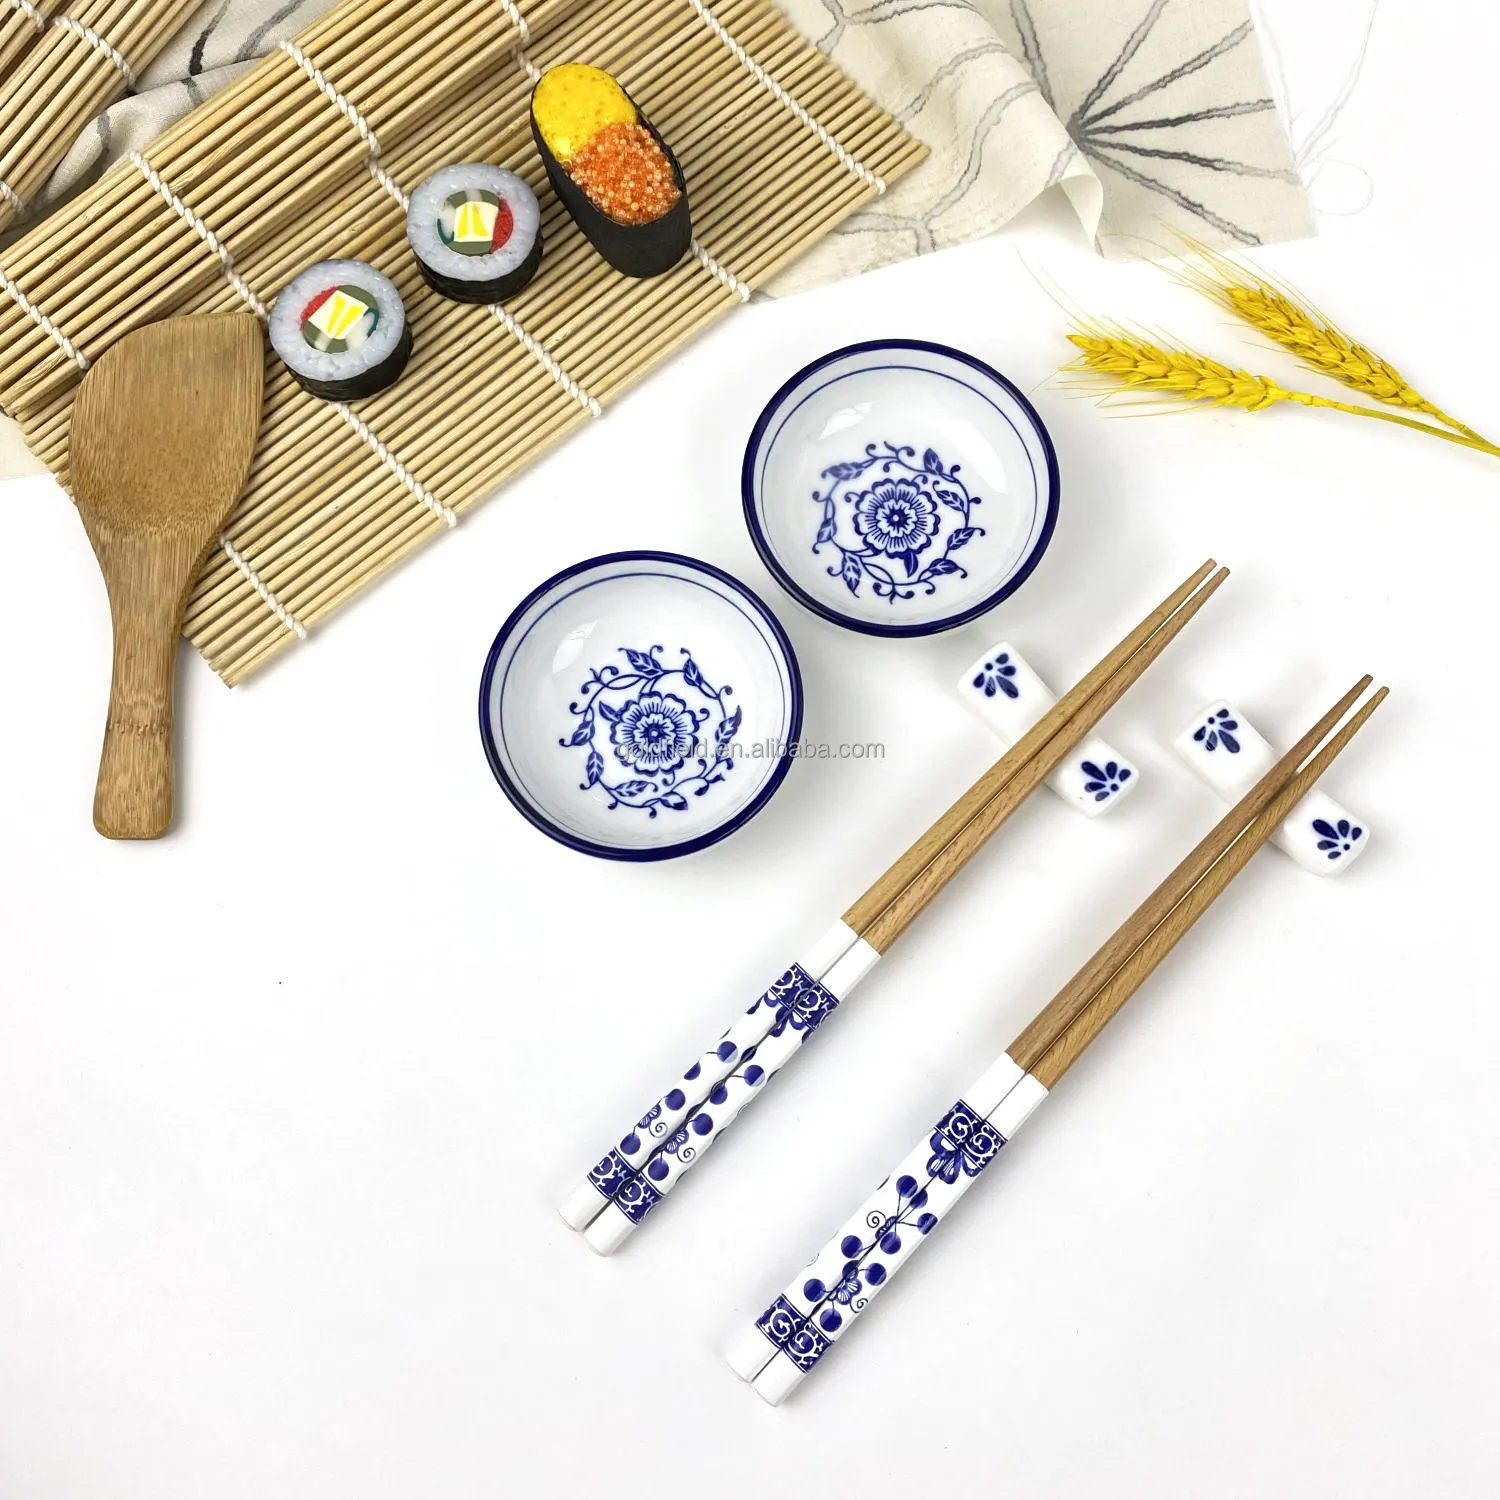 Kit de sushi caseiro 9 peças, espátula de arroz fosca de bambu, pauzinhos de madeira, prato de cerâmica, padrão branco e azul